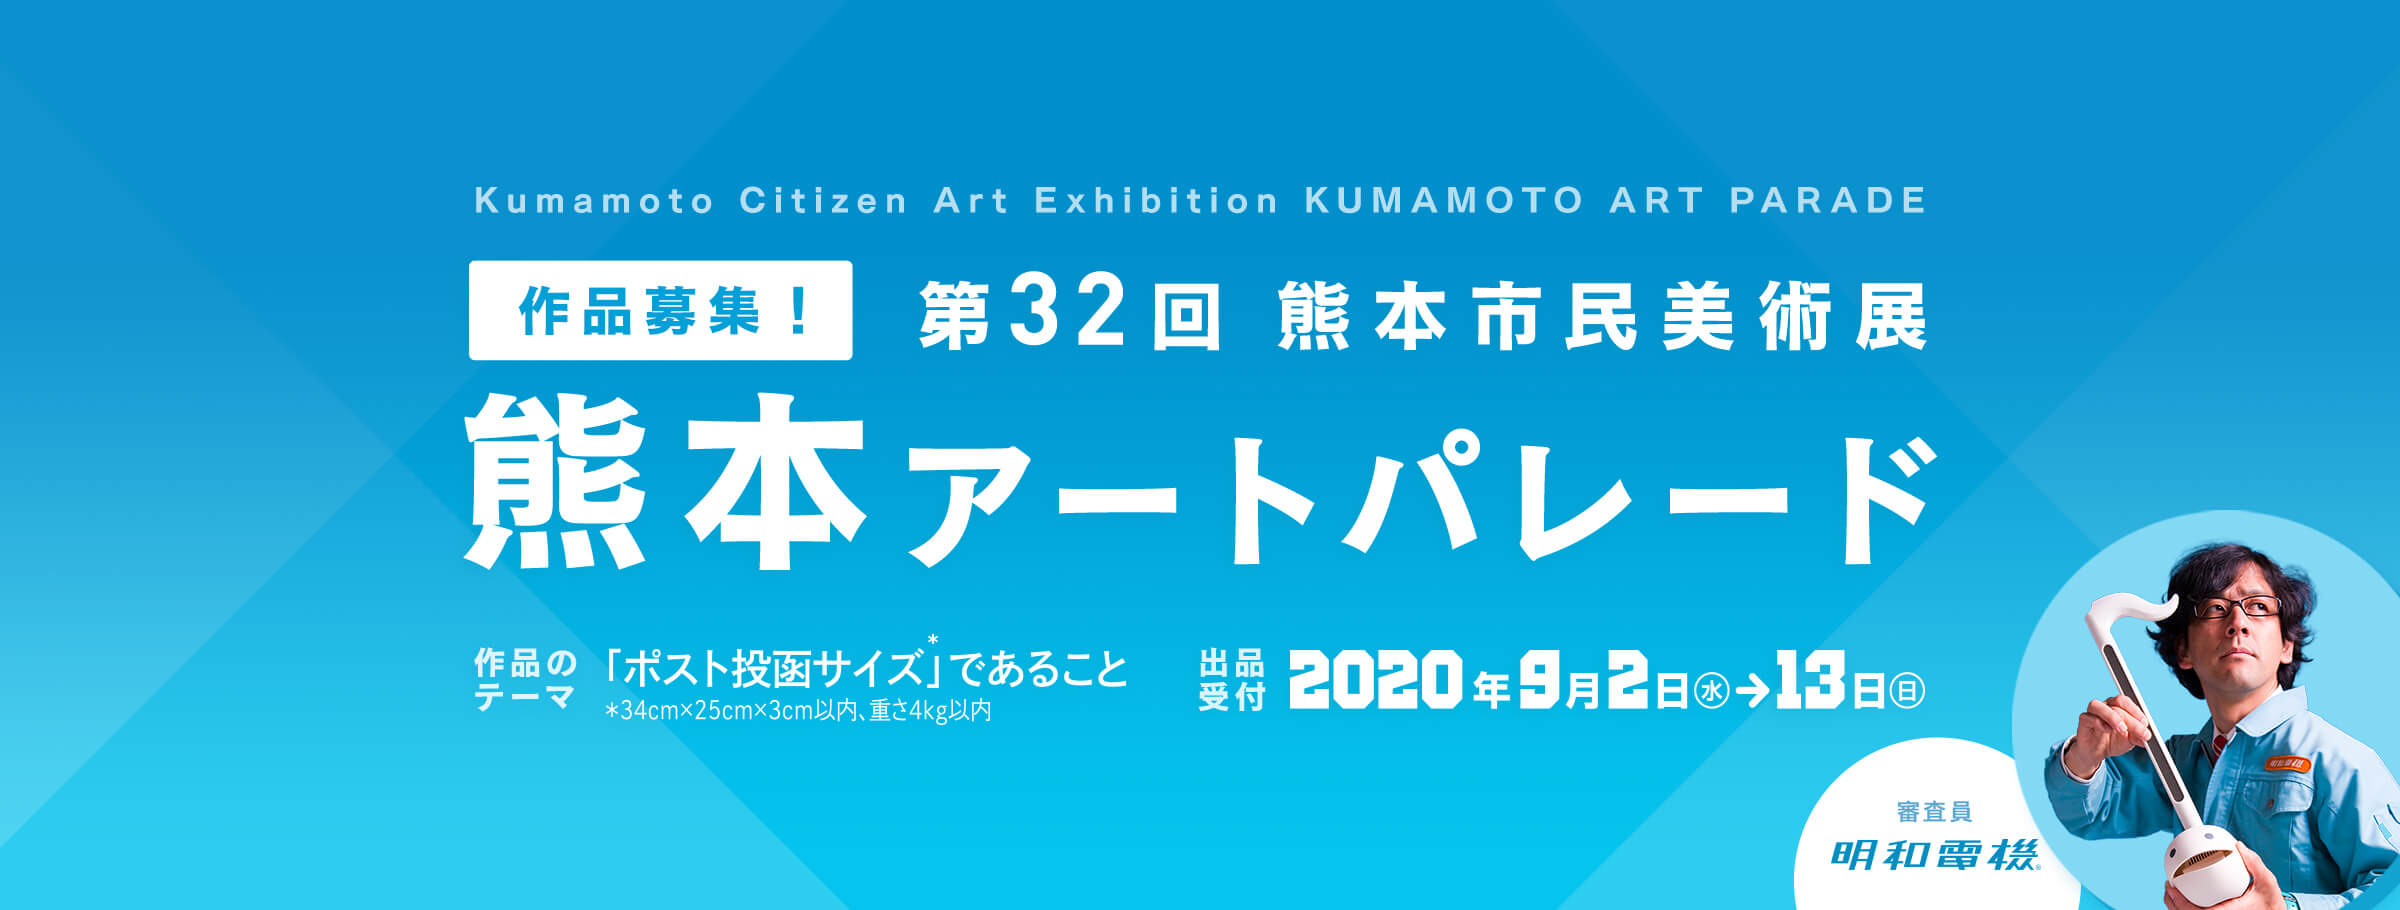 第32回熊本市民美術展 熊本アートパレード